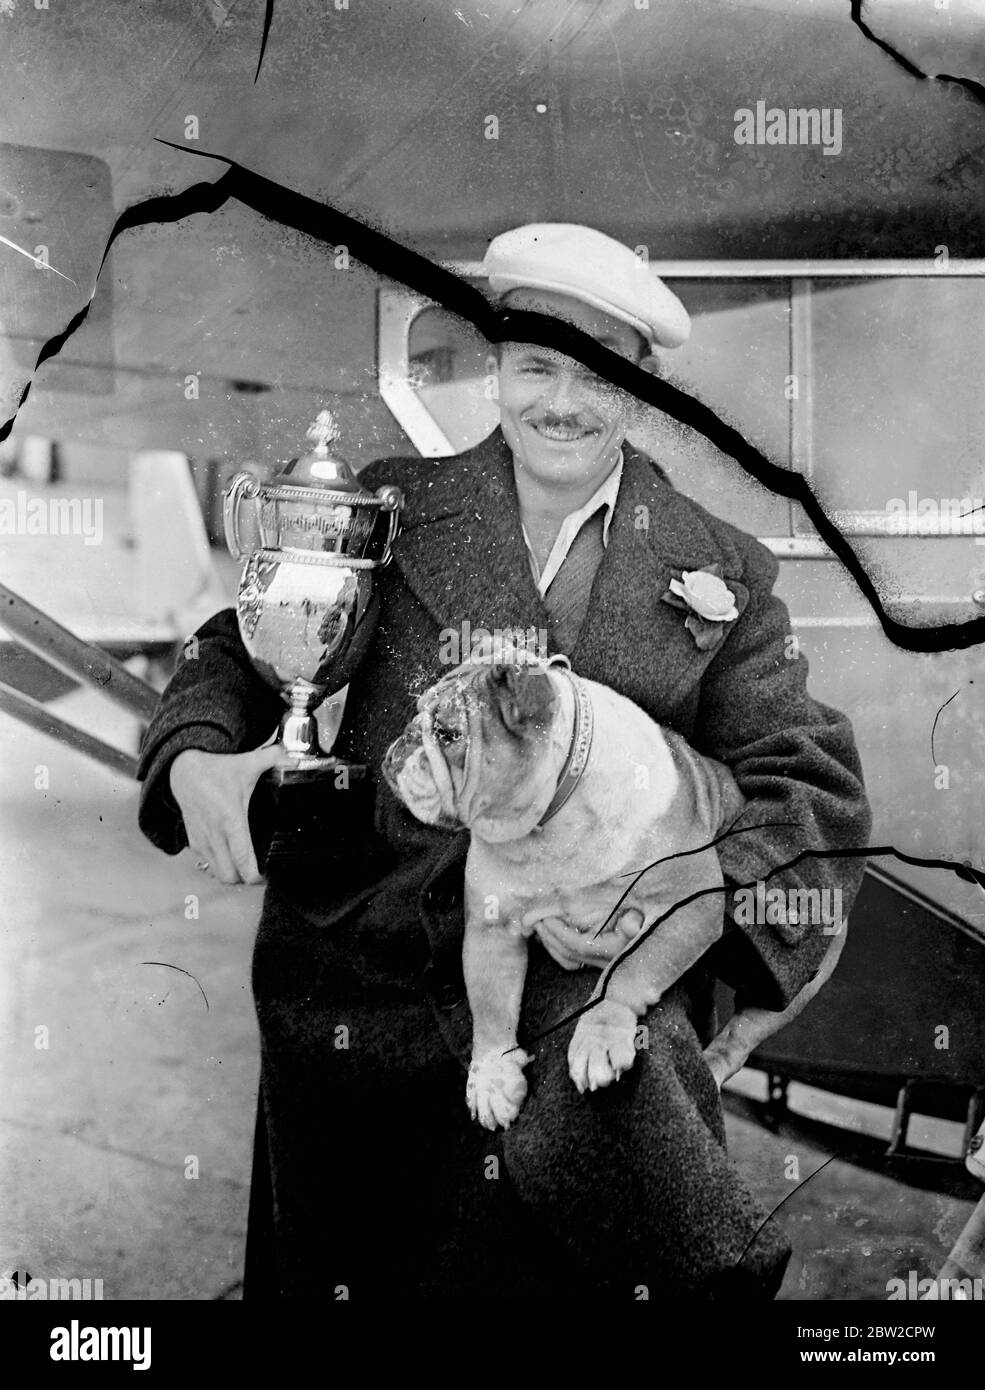 Eine Krone, die eines mehrfachen Hundechampions würdig ist - ein Platin- und Diamanthalsband - wurde von Herrn Jimmy Knode seinem alles erobernden Bulldog, Champion Bosworth Queen, überreicht. Bosworth Queen, der bereits 10 englische Meisterschaften in der Schweiz ausgetragen hat, hat gerade zwei irische Titel gewonnen - in Cork und Ballymena. Sie machte separate Reisen mit dem Flugzeug nach Irland und zurück, um an den Shows teilzunehmen, insgesamt flog sie etwa 3000 Meilen. Bosworth Queen, die in ihrer Rasse ungeschlagen ist, ist auch als Reisender wohl ungeschlagen. Sie ist 20,000 Meilen auf See, Luft, Bahn und Straße gereist und fünf Monate auf der Suche nach Show-Ehre Stockfoto